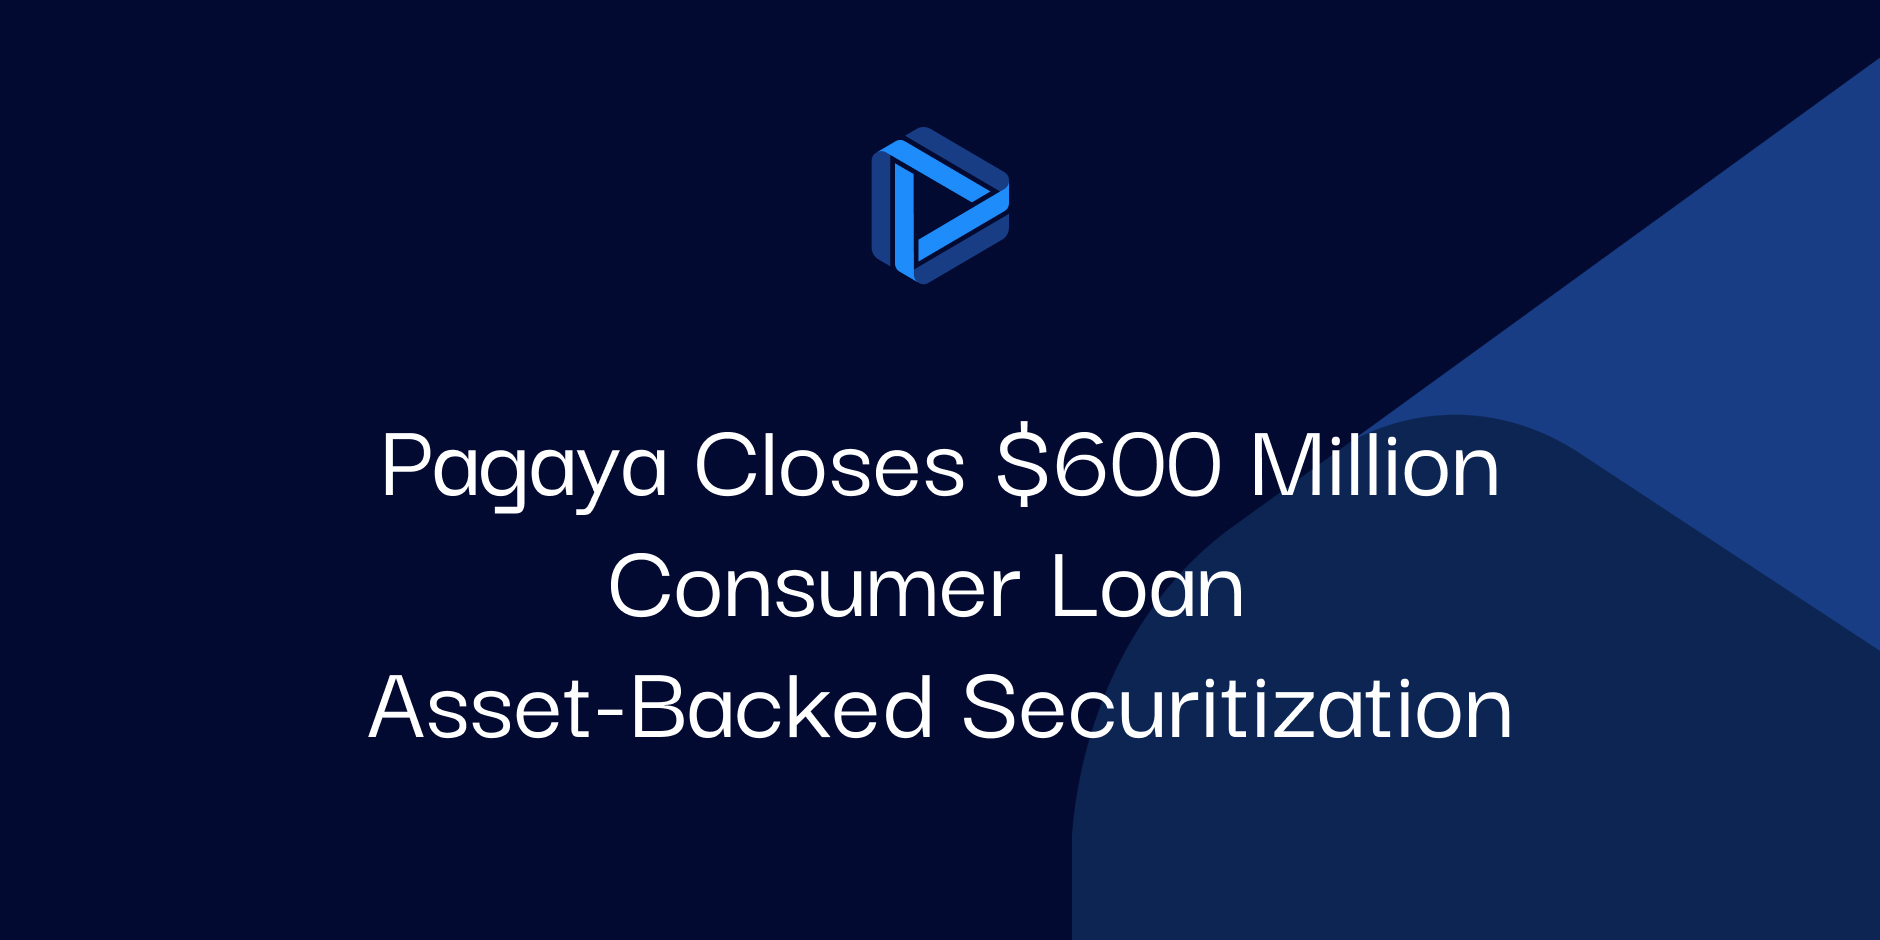 Pagaya Closes $600 Million Consumer Loan Asset-Backed Securitization